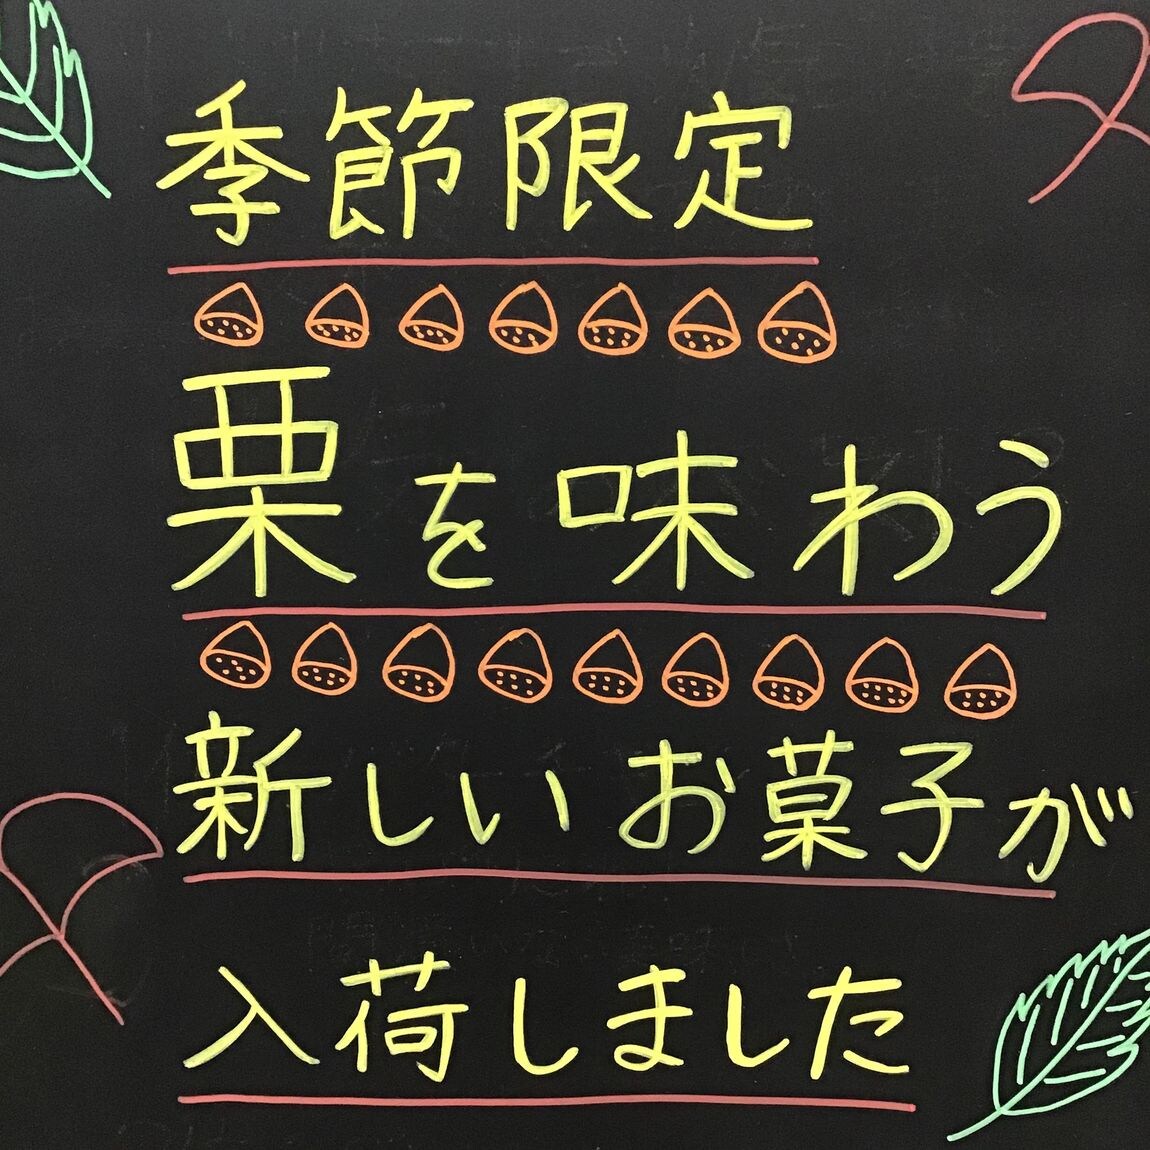 【富山ファボーレ】季節のお菓子①栗